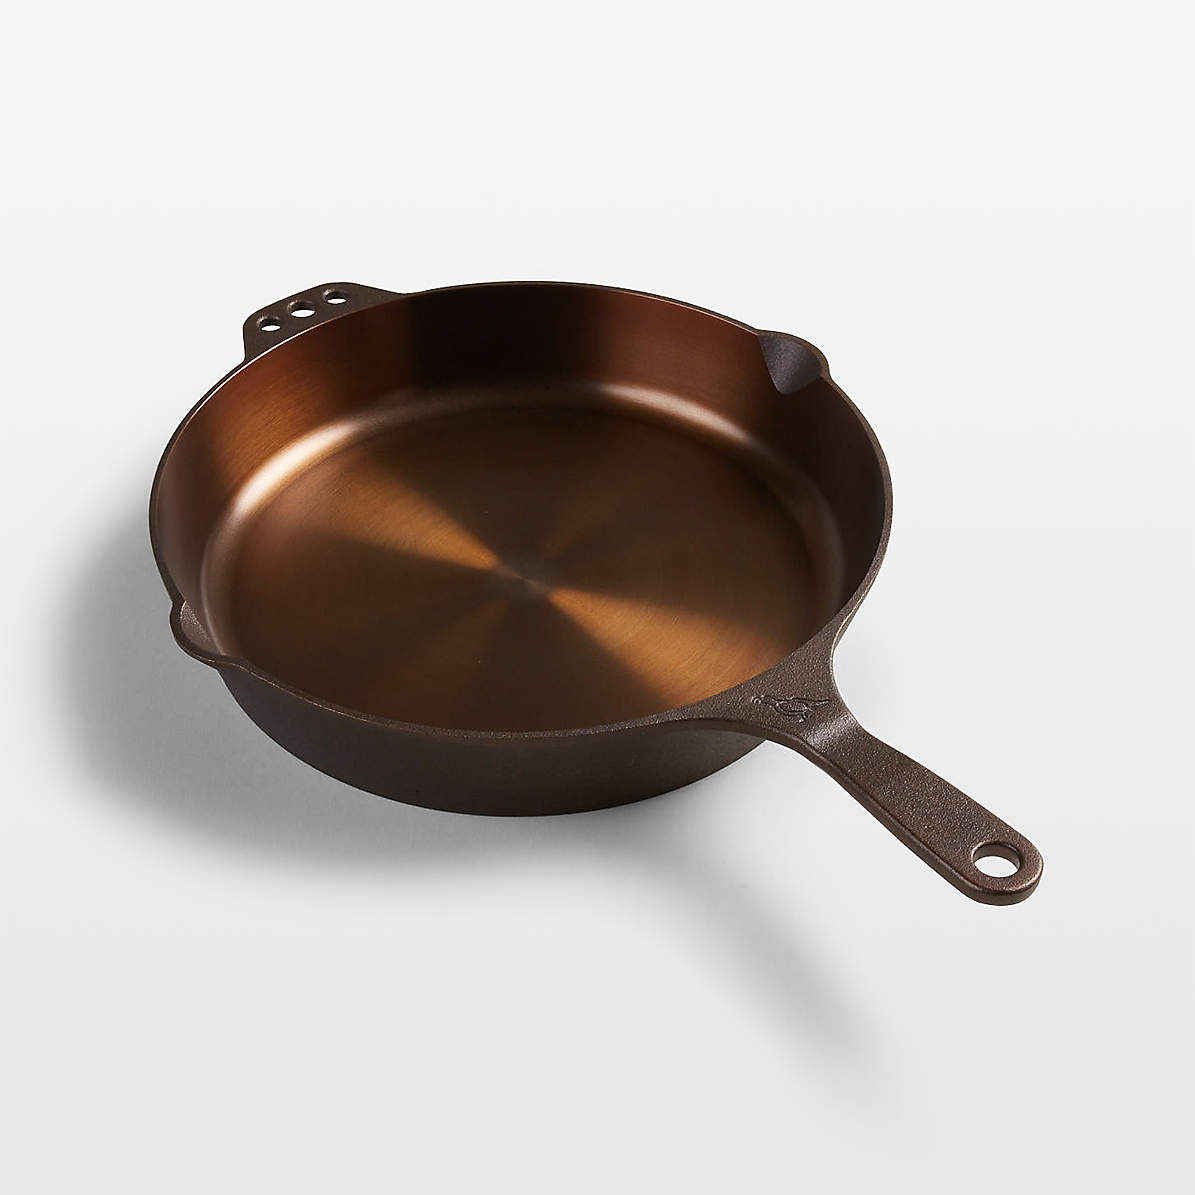 BK Ceramic Non Stick 8'' 1 -Piece Frying Pan Frying Pan / Skillet